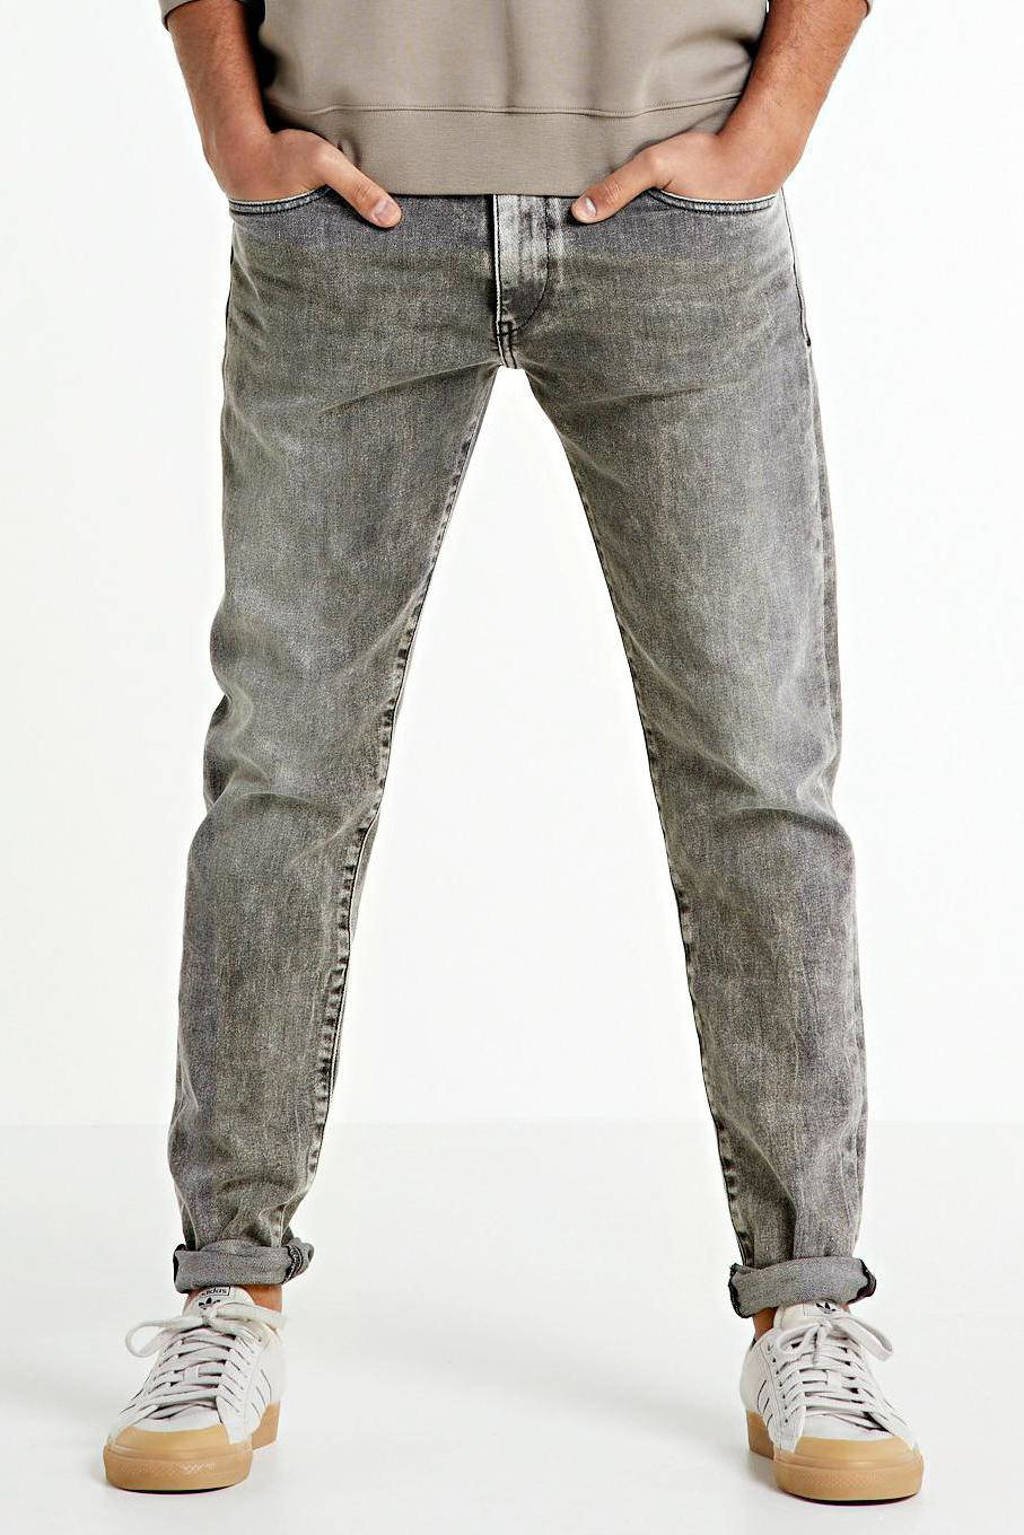 Diesel slim fit jeans D-Strukt 02 / grey